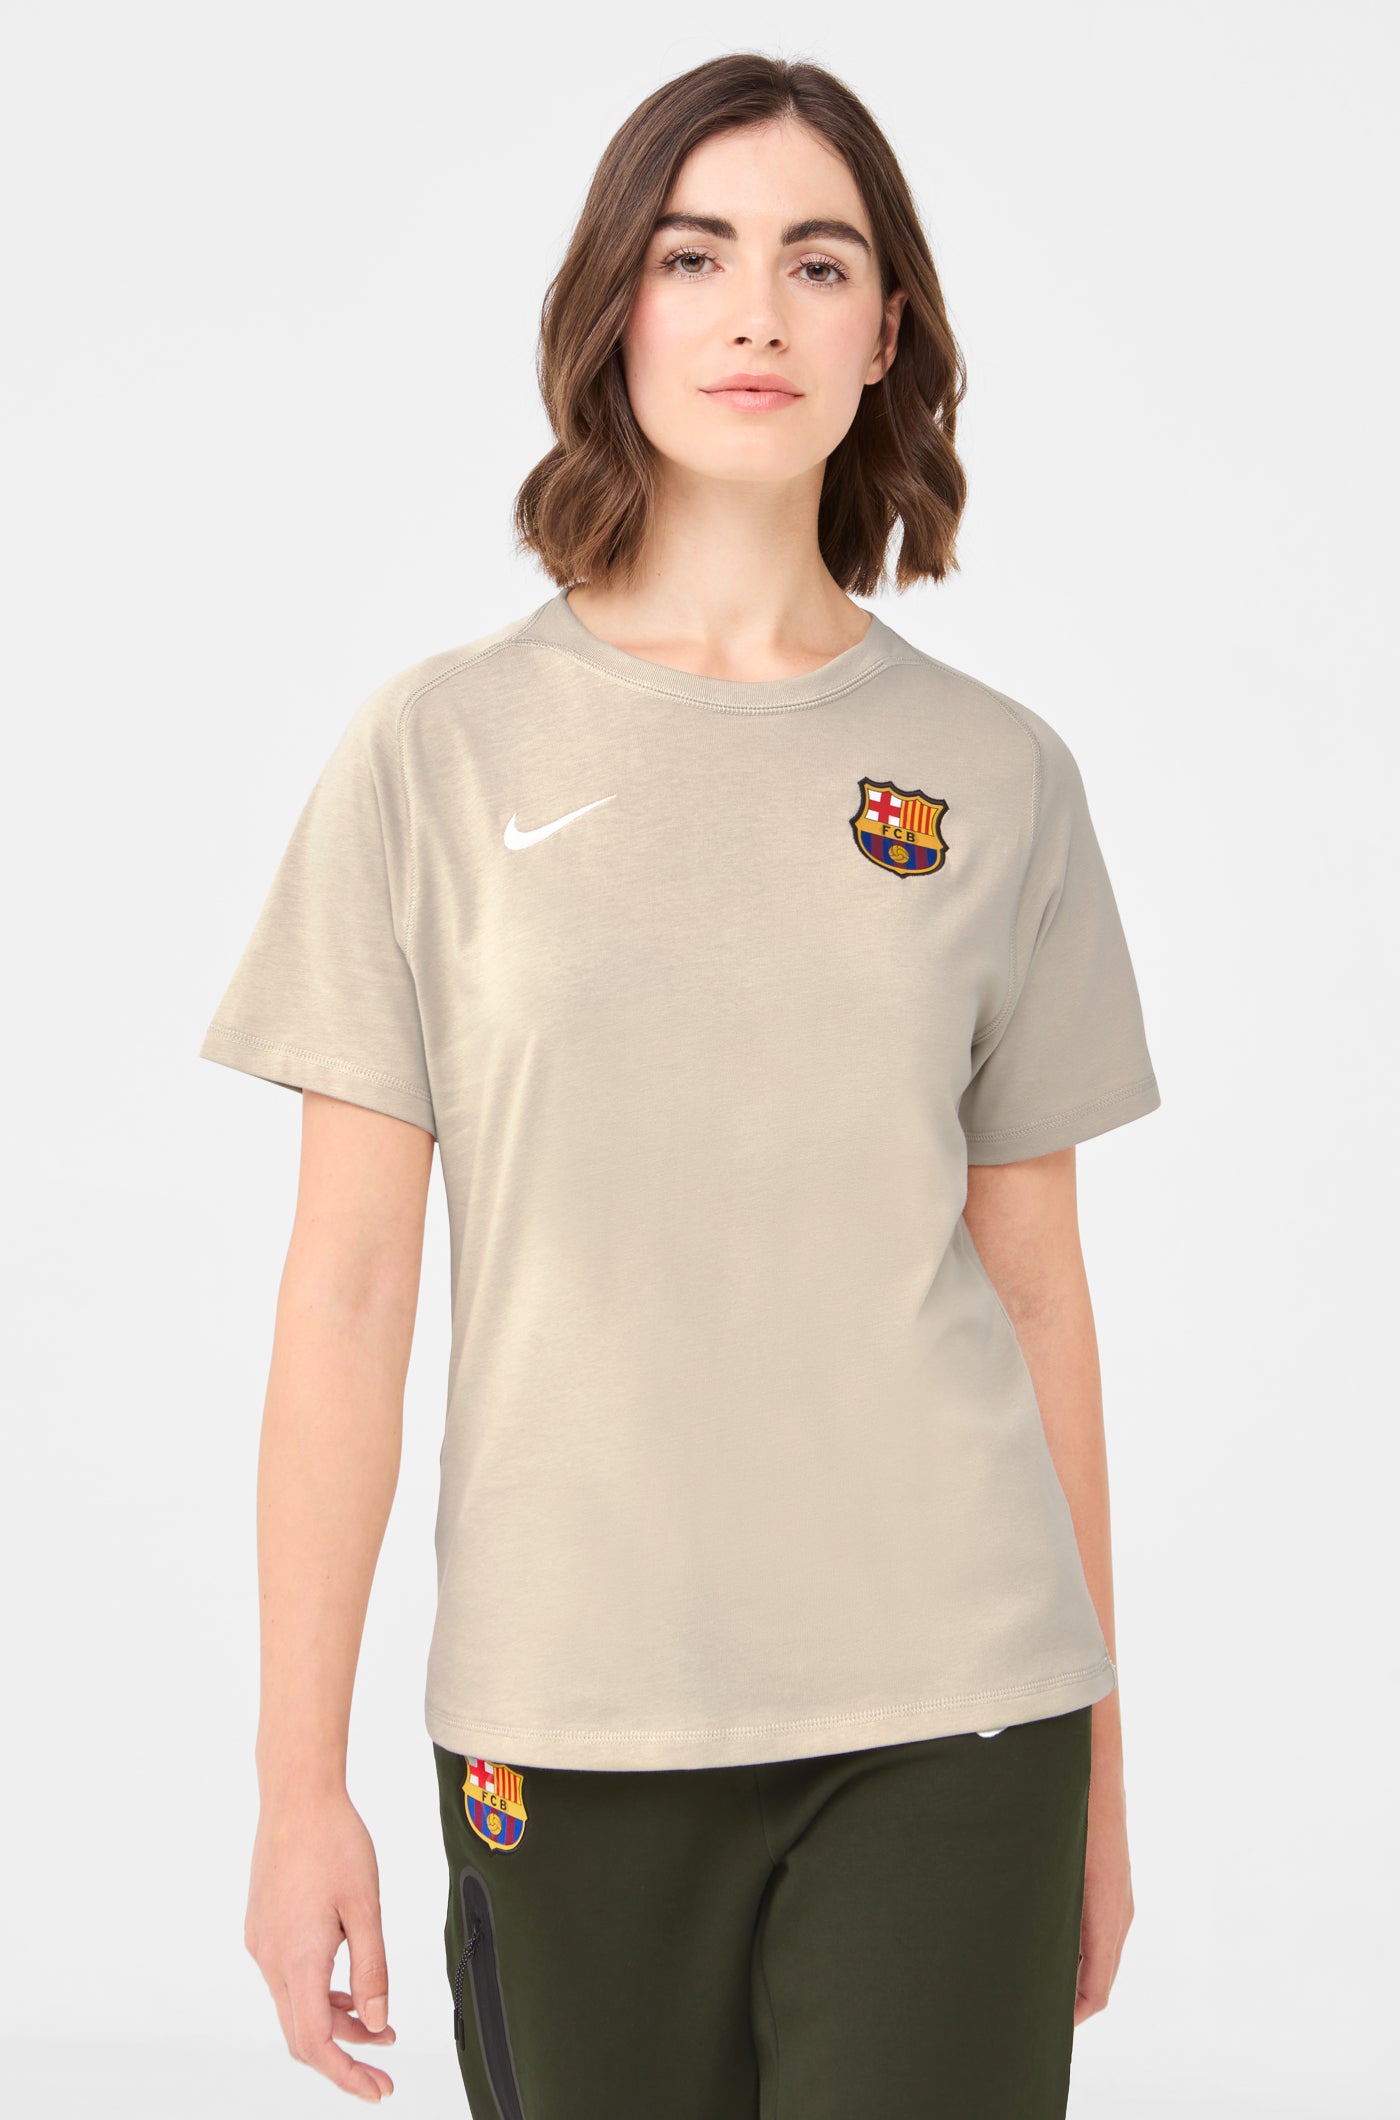 Women's Tops & T-Shirts. Nike SE